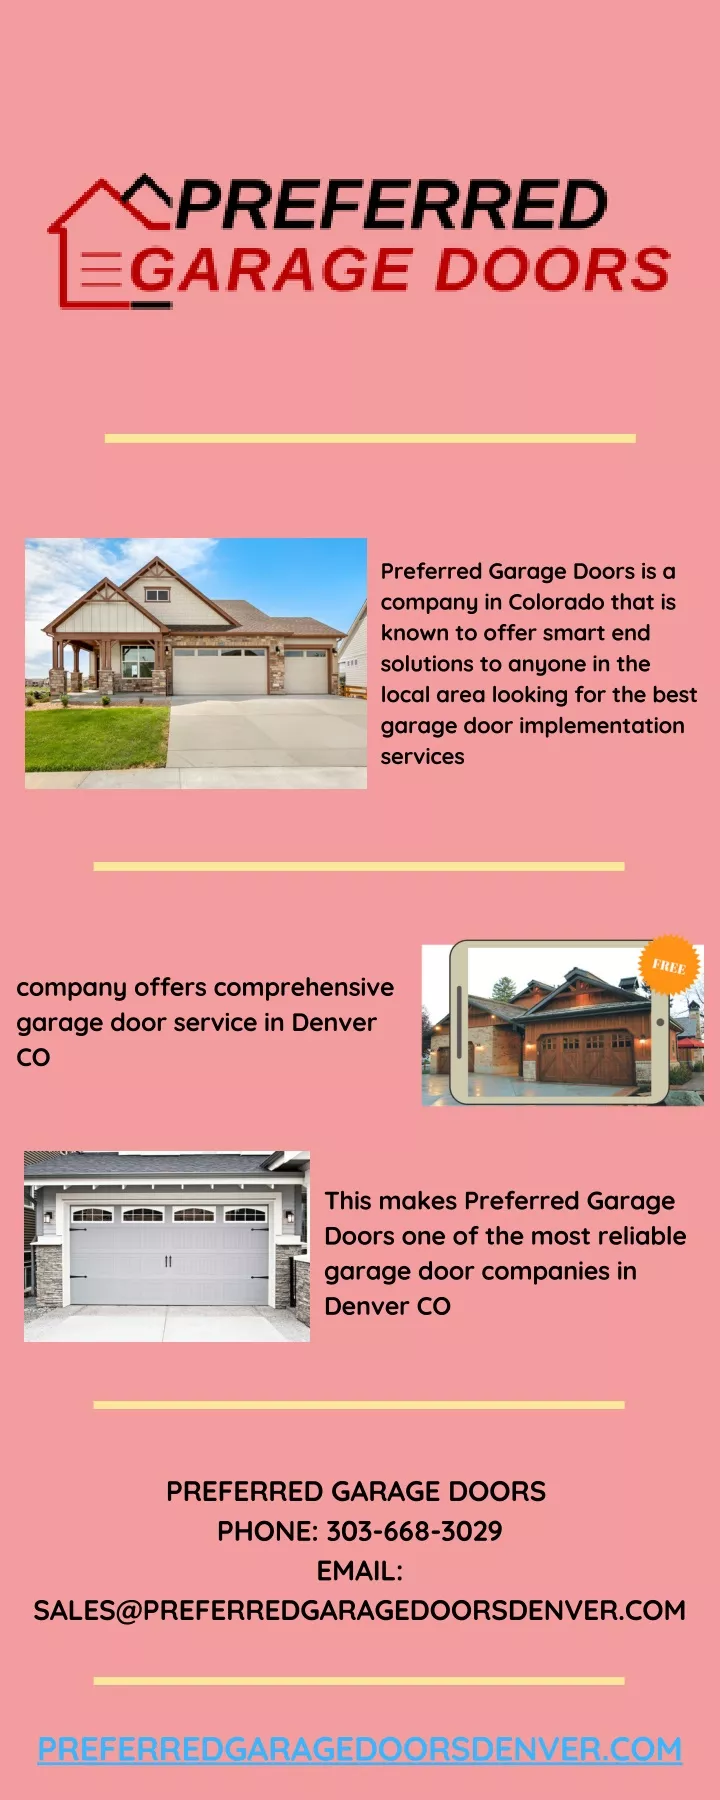 preferred garage doors is a company in colorado